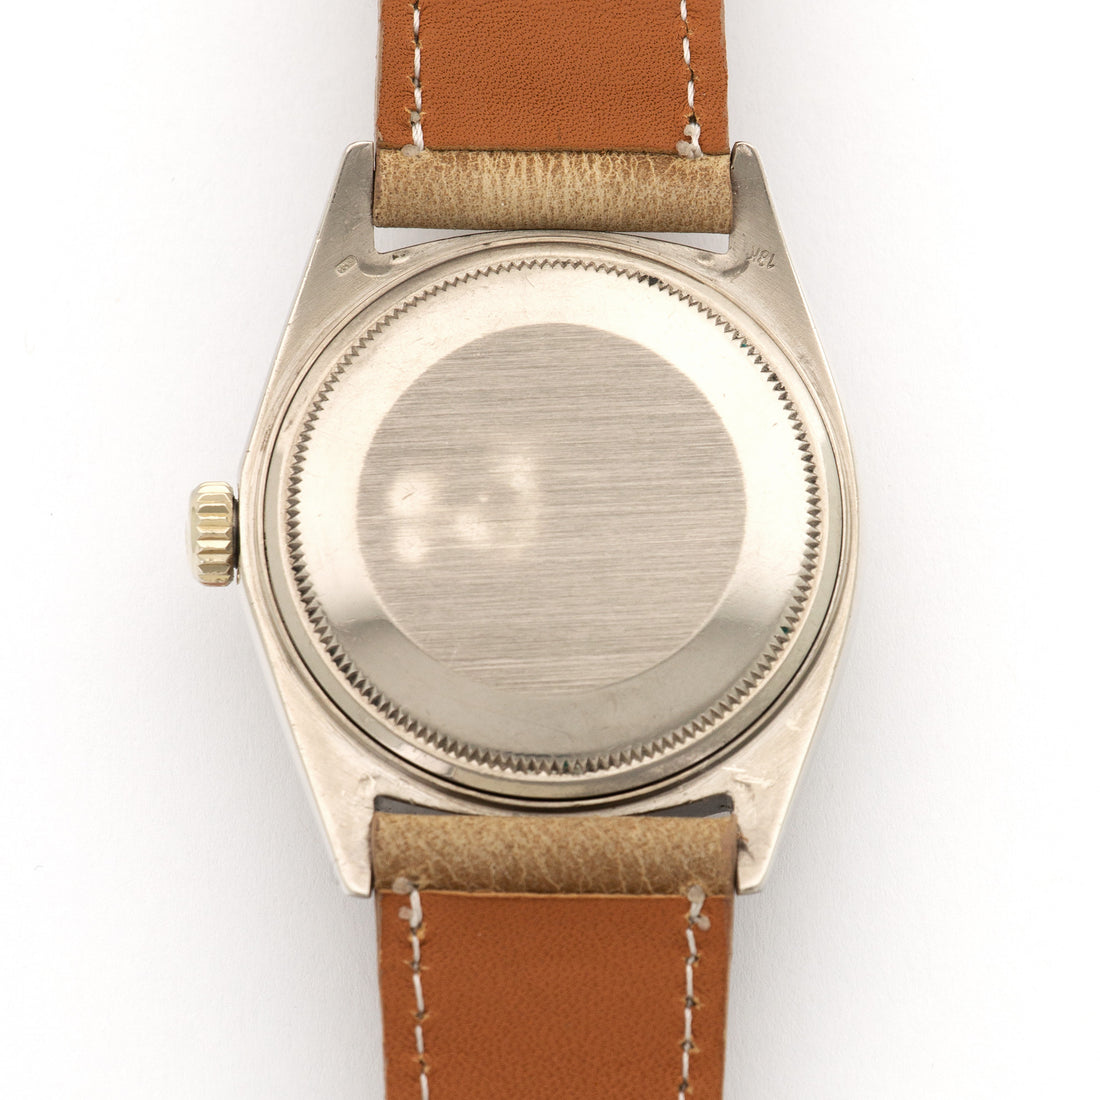 Rolex White Gold Day-Date Watch Ref. 1803, Circa 1967